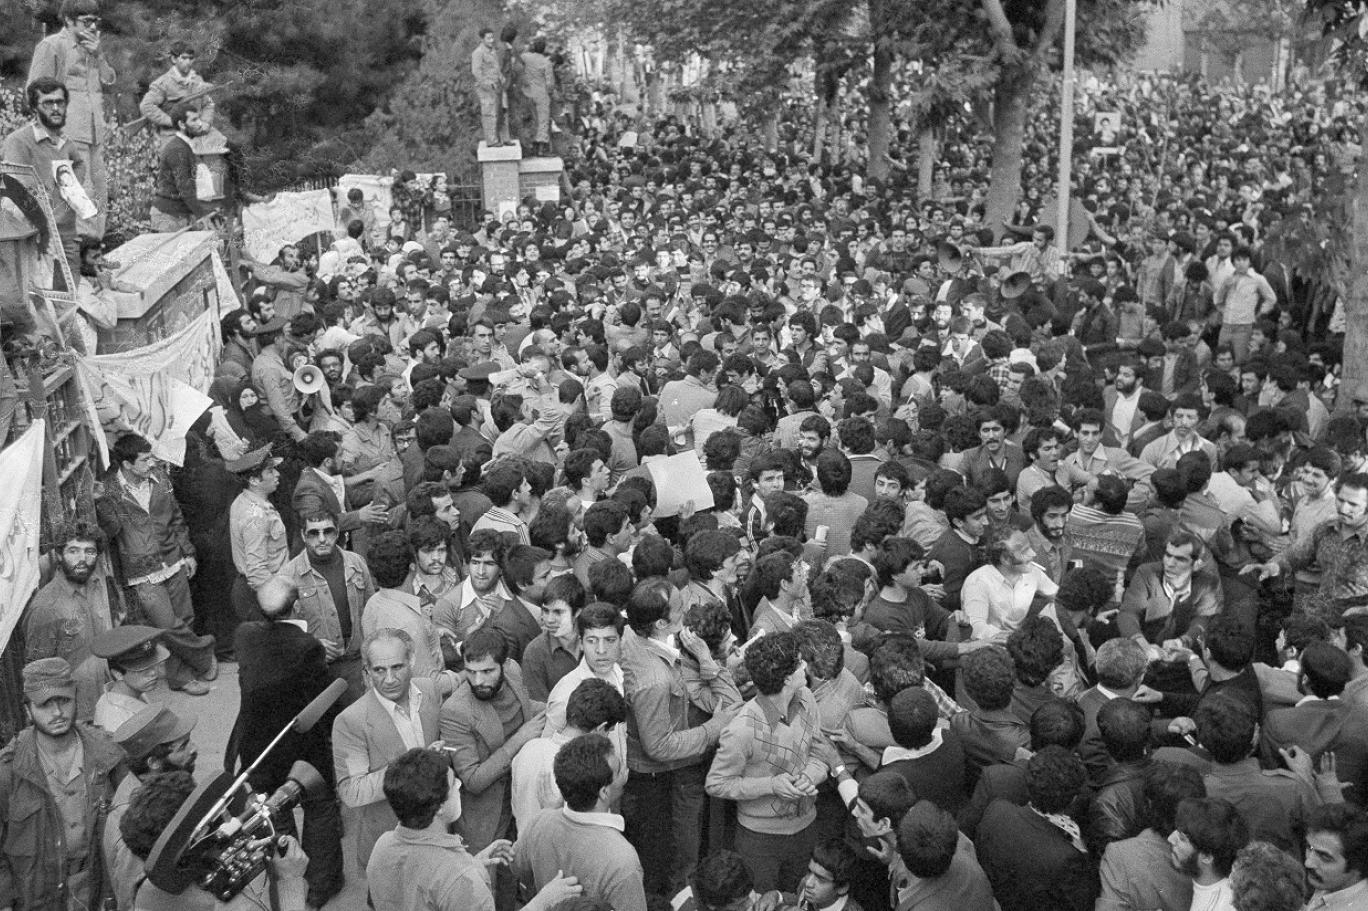 اقتحام السفارة الأميركية في إيران عام 1979 كيف أسس لهجوم مماثل ضد بعثات دبلوماسية أخرى اندبندنت عربية